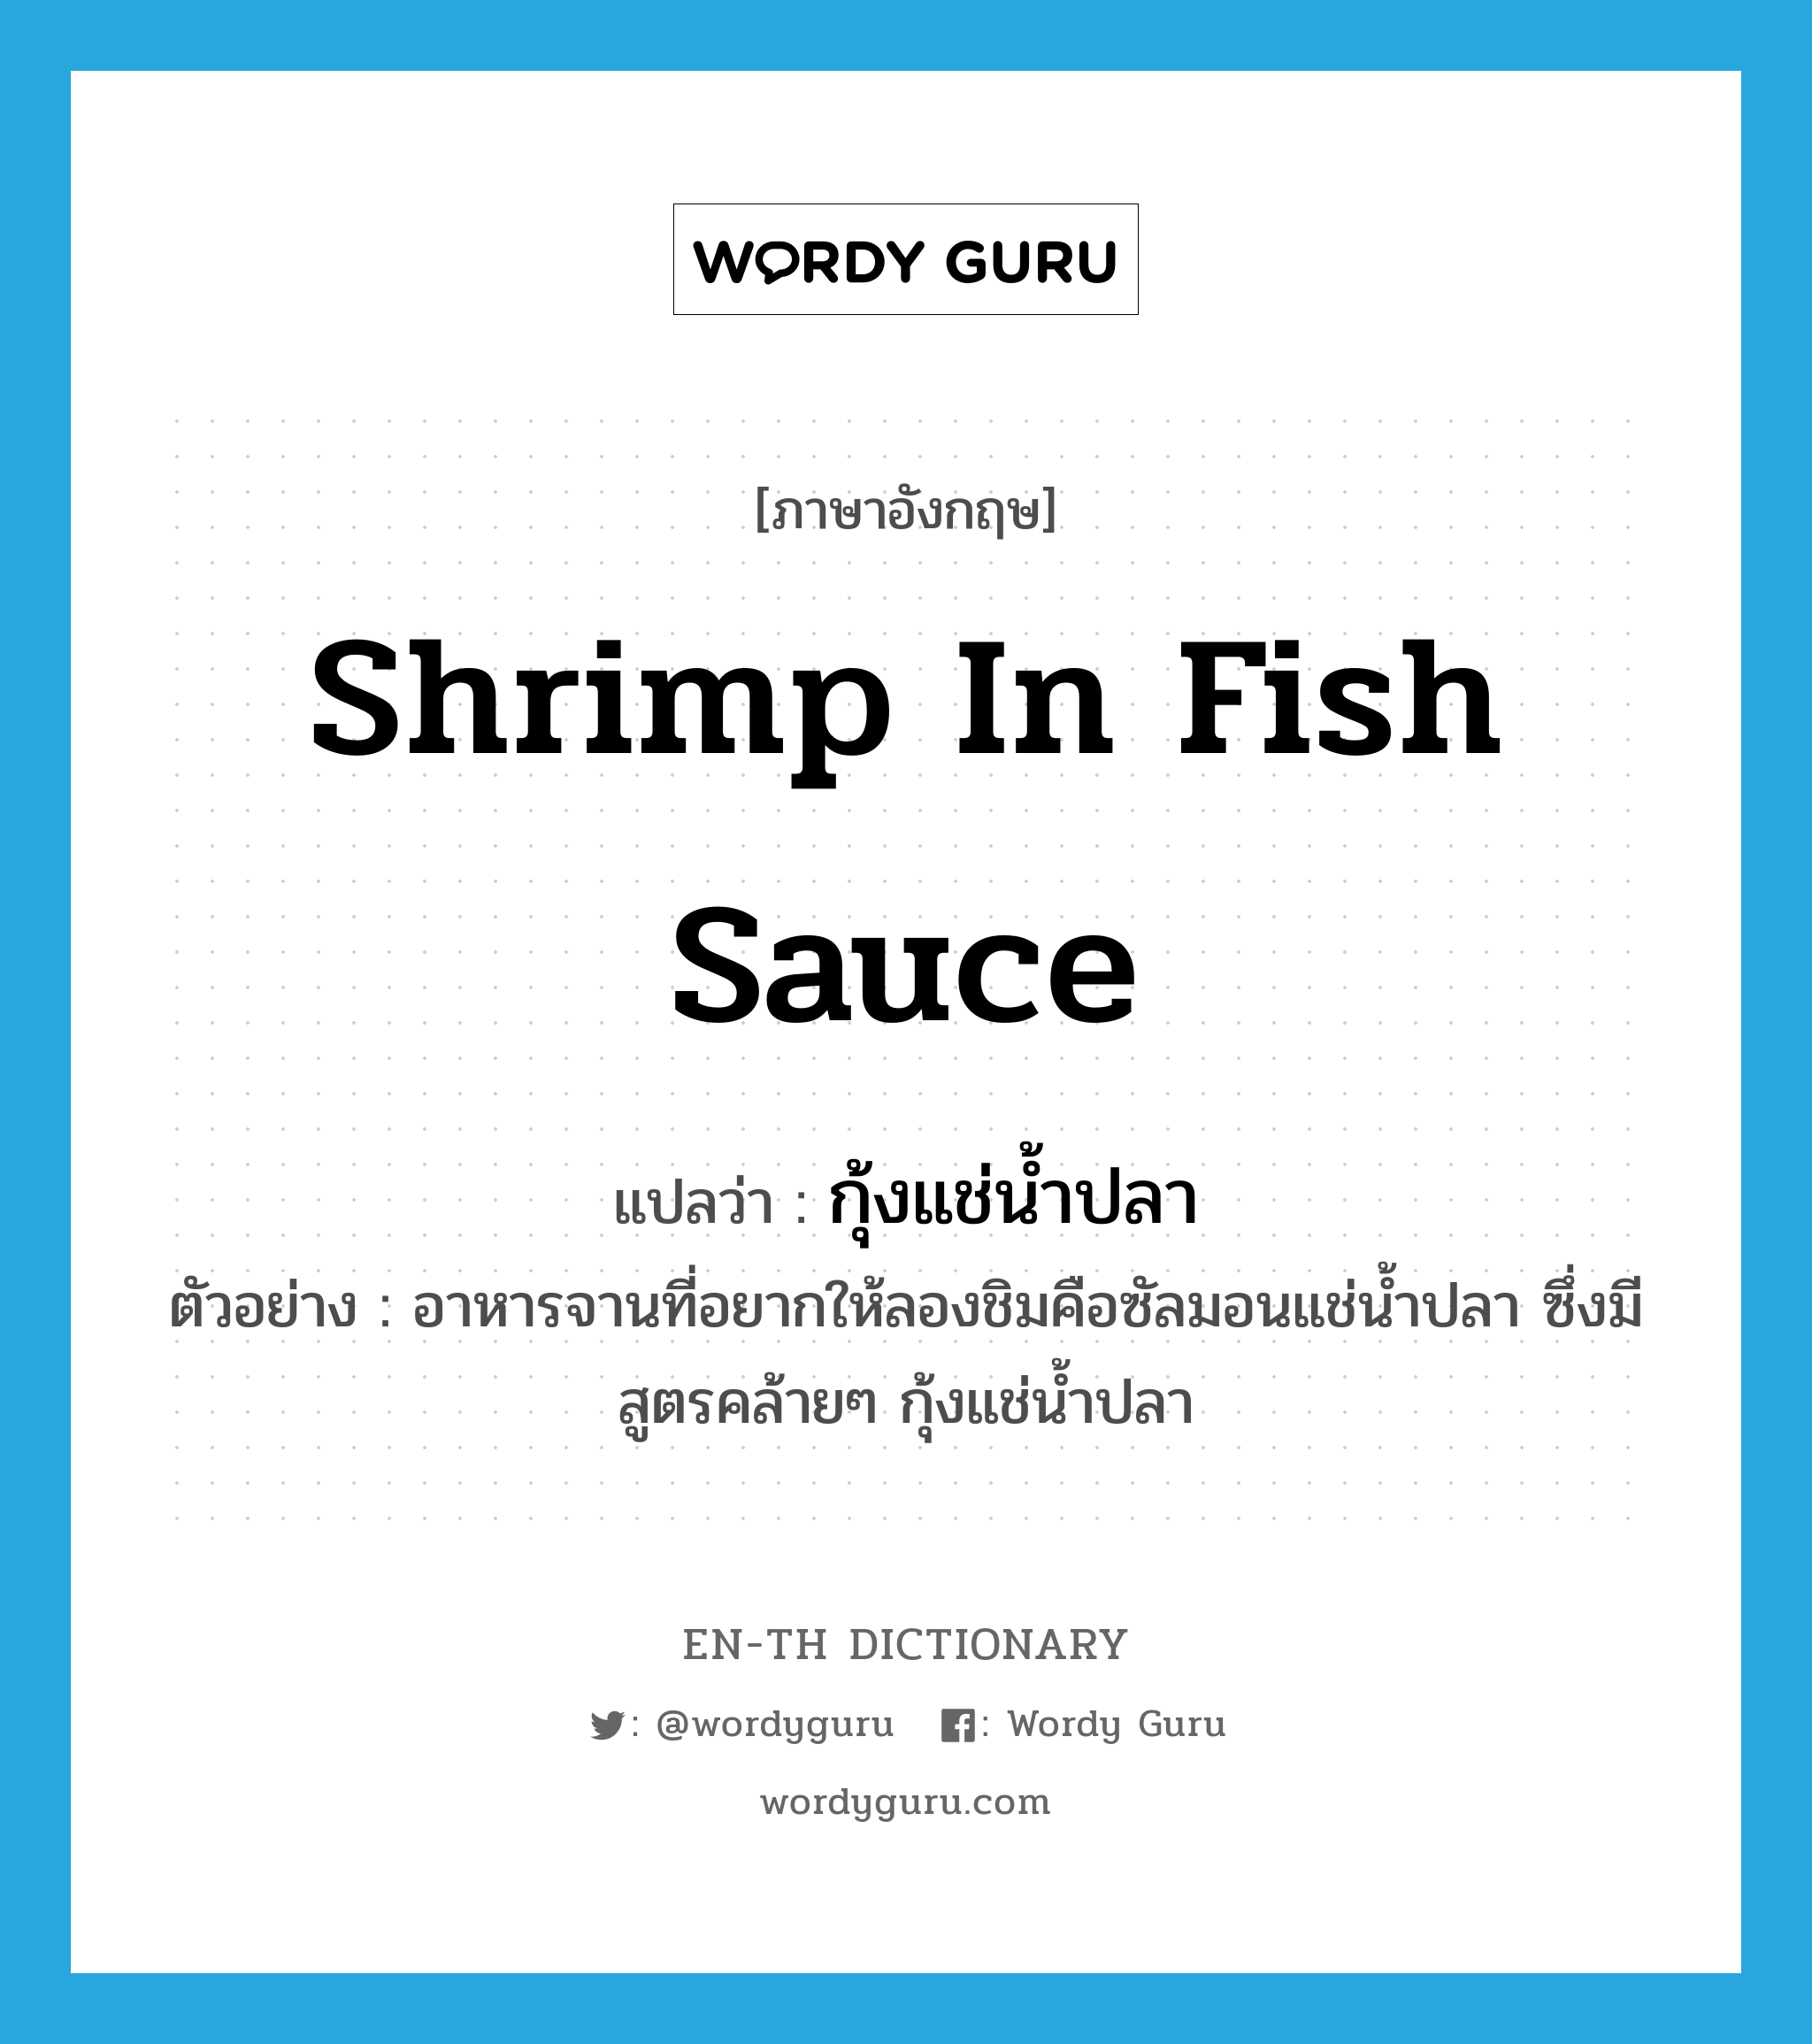 กุ้งแช่น้ำปลา ภาษาอังกฤษ?, คำศัพท์ภาษาอังกฤษ กุ้งแช่น้ำปลา แปลว่า shrimp in fish sauce ประเภท N ตัวอย่าง อาหารจานที่อยากให้ลองชิมคือซัลมอนแช่น้ำปลา ซึ่งมีสูตรคล้ายๆ กุ้งแช่น้ำปลา หมวด N